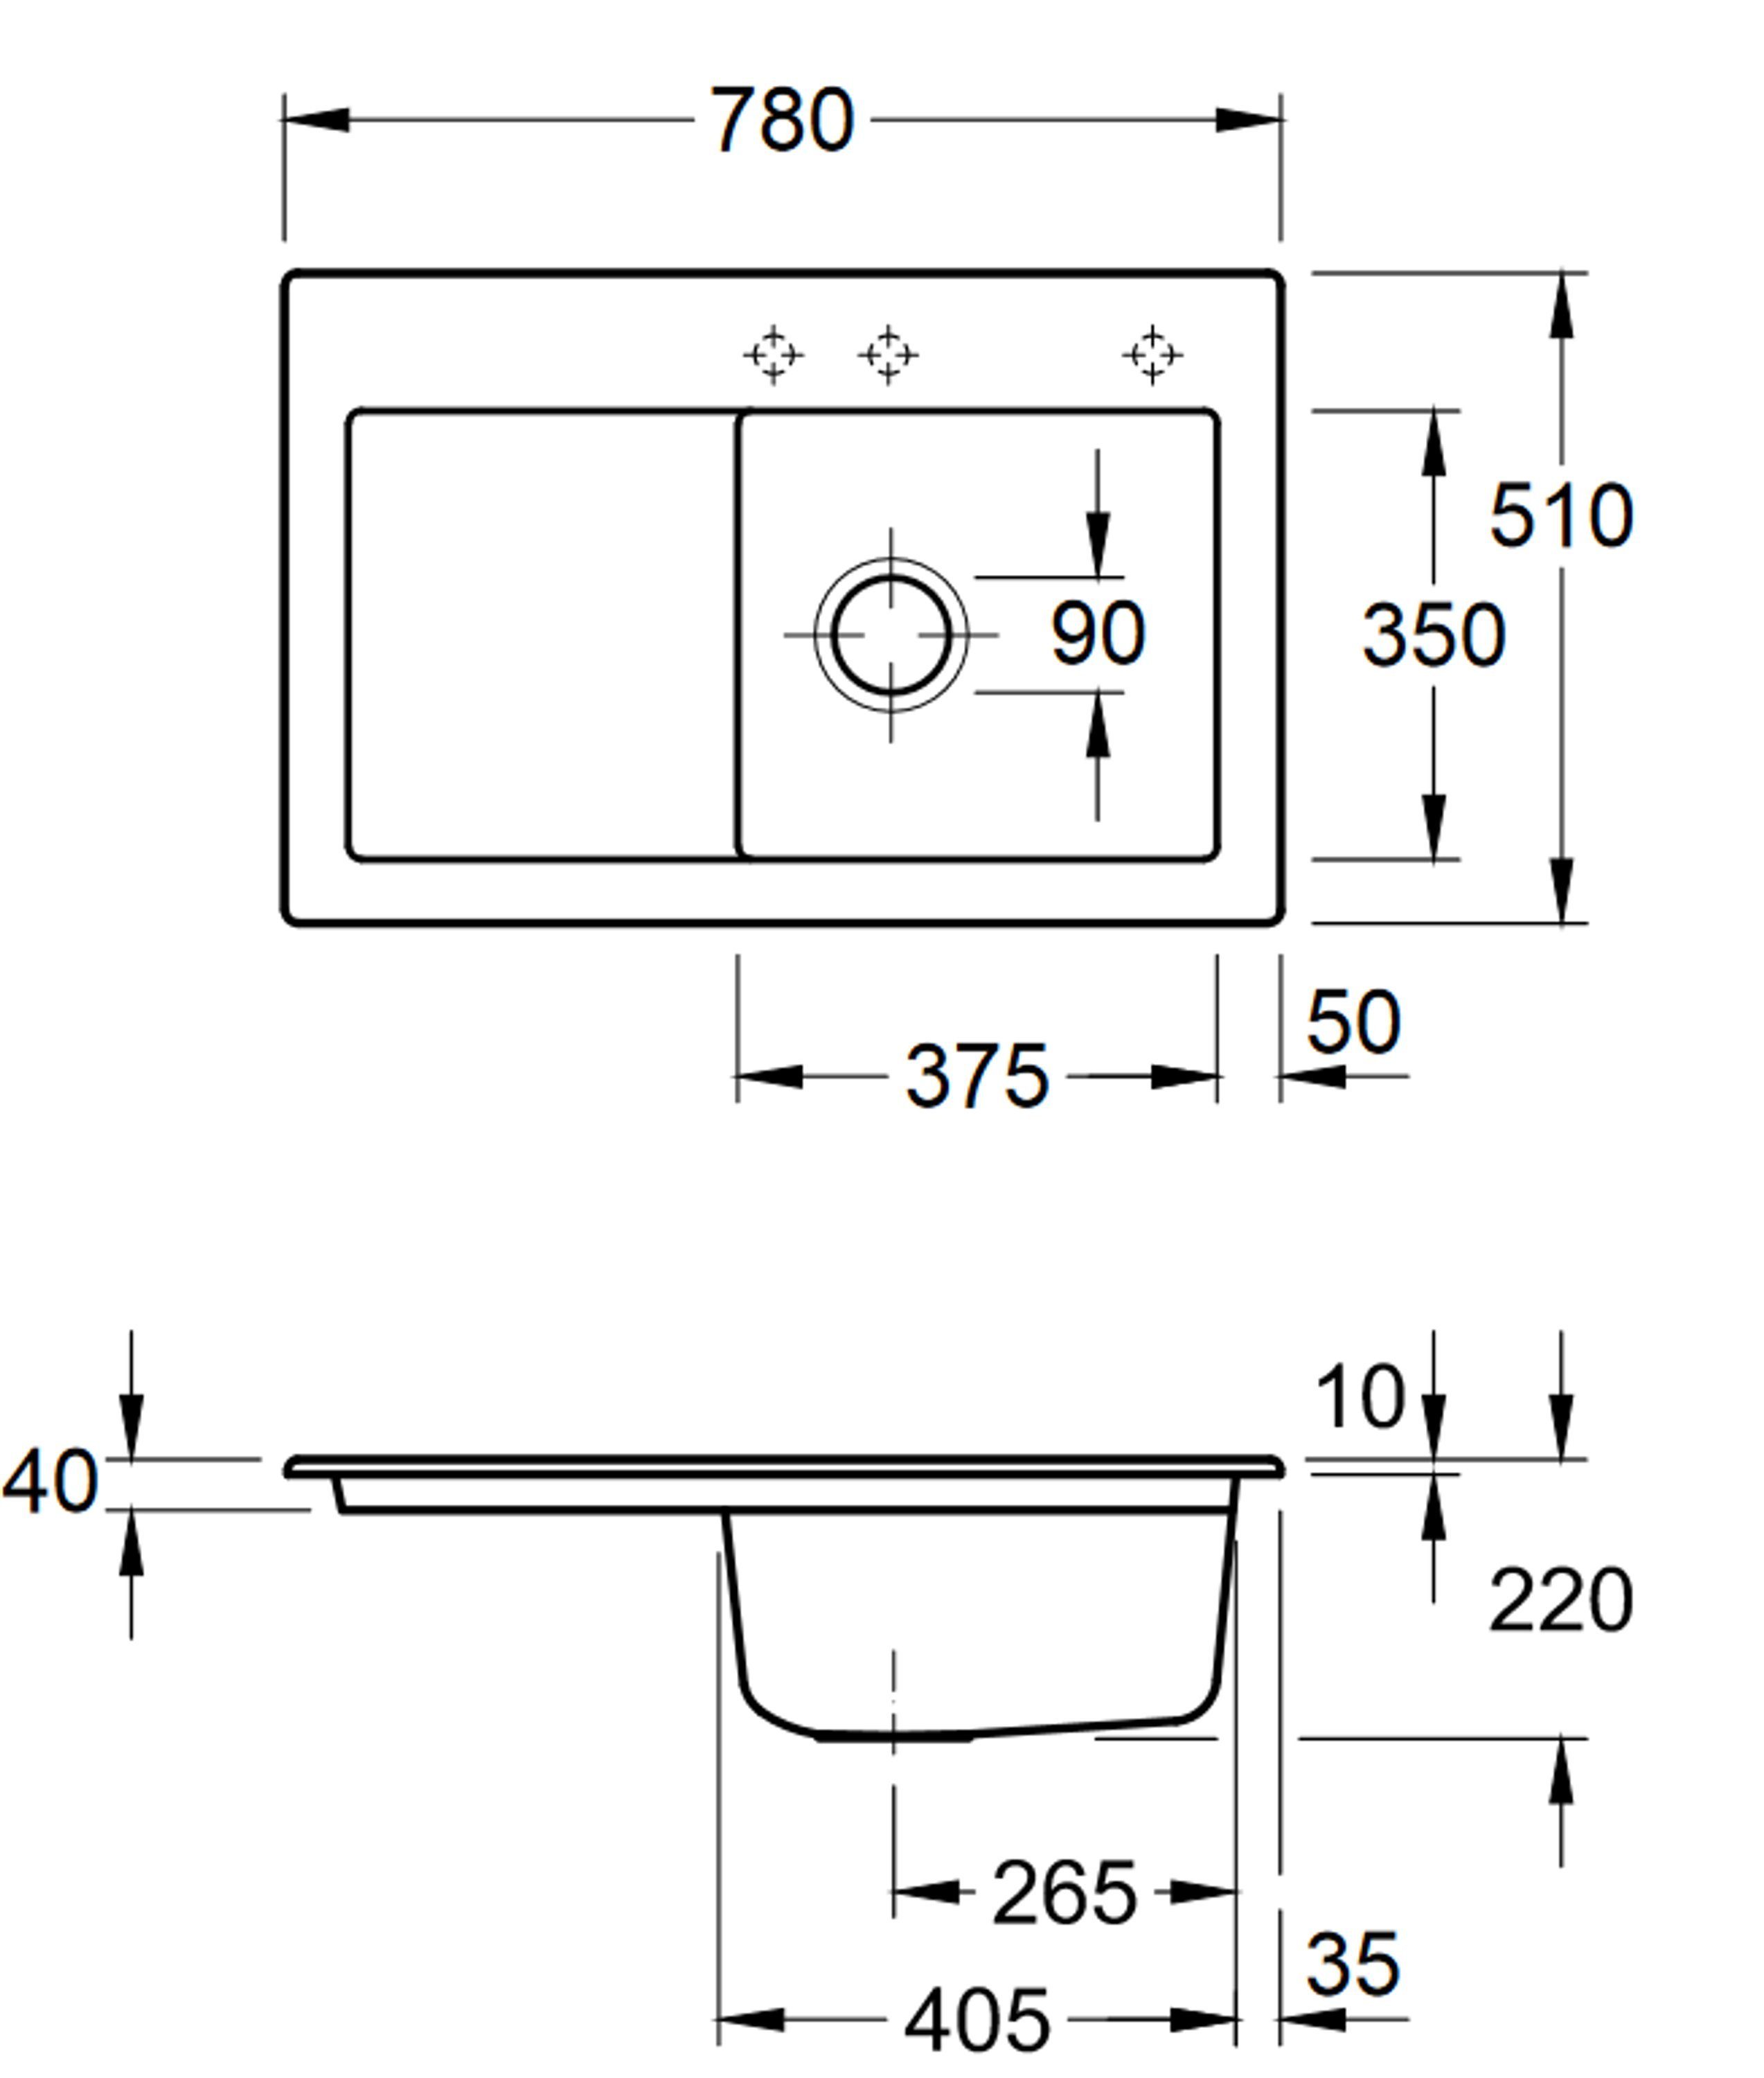 Villeroy & links Serie, R1, Subway cm, 02 Küchenspüle 6714 78/22 rechts möglich Becken Boch und Rechteckig